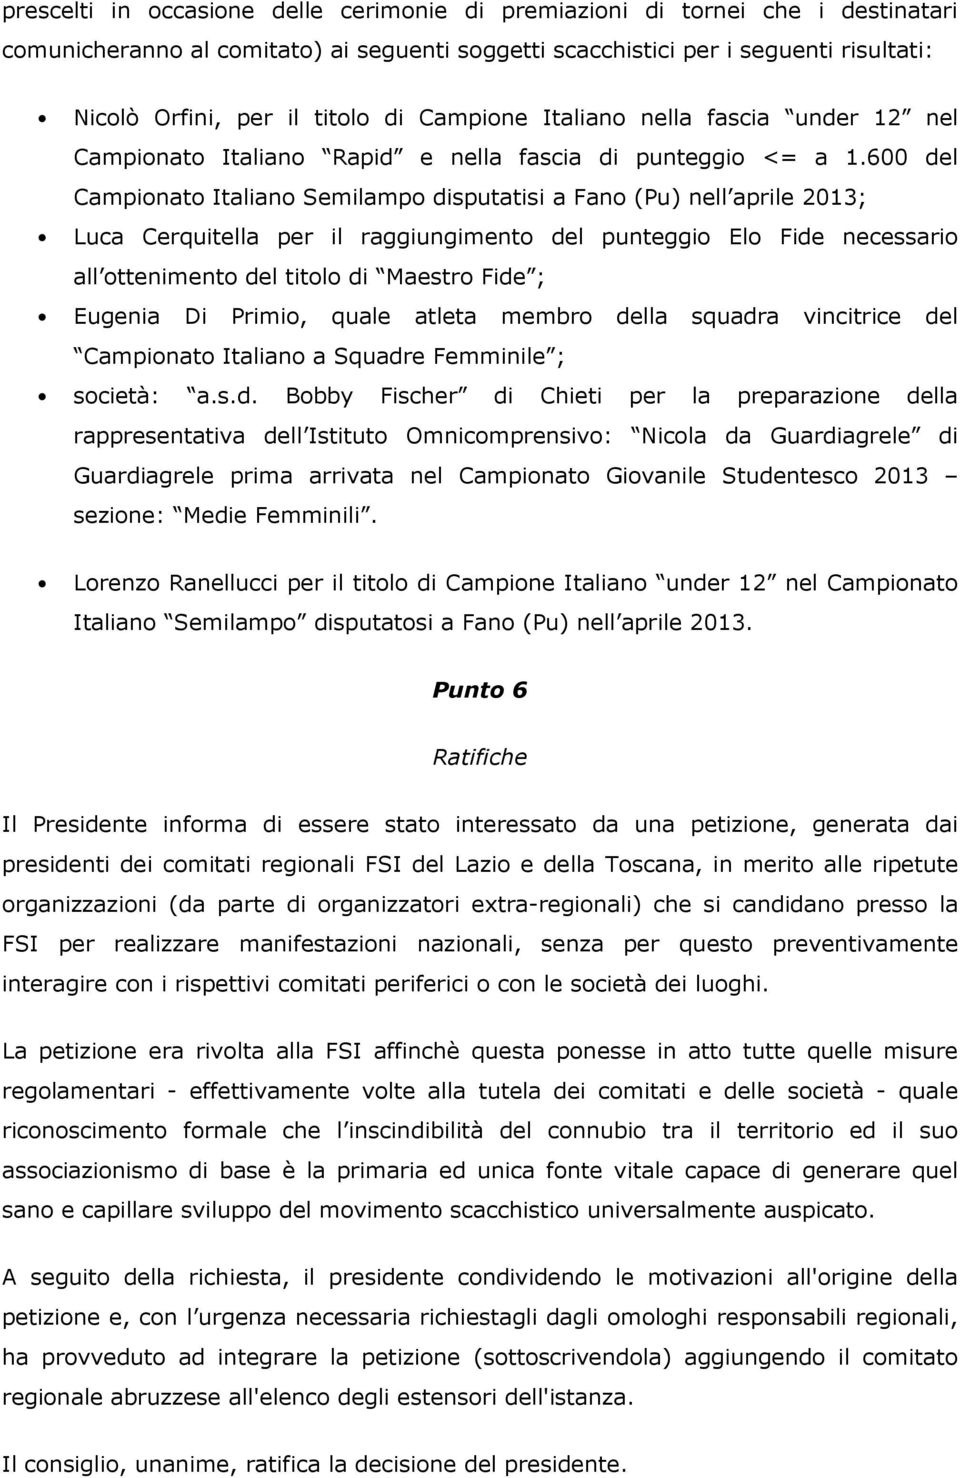 600 del Campionato Italiano Semilampo disputatisi a Fano (Pu) nell aprile 2013; Luca Cerquitella per il raggiungimento del punteggio Elo Fide necessario all ottenimento del titolo di Maestro Fide ;